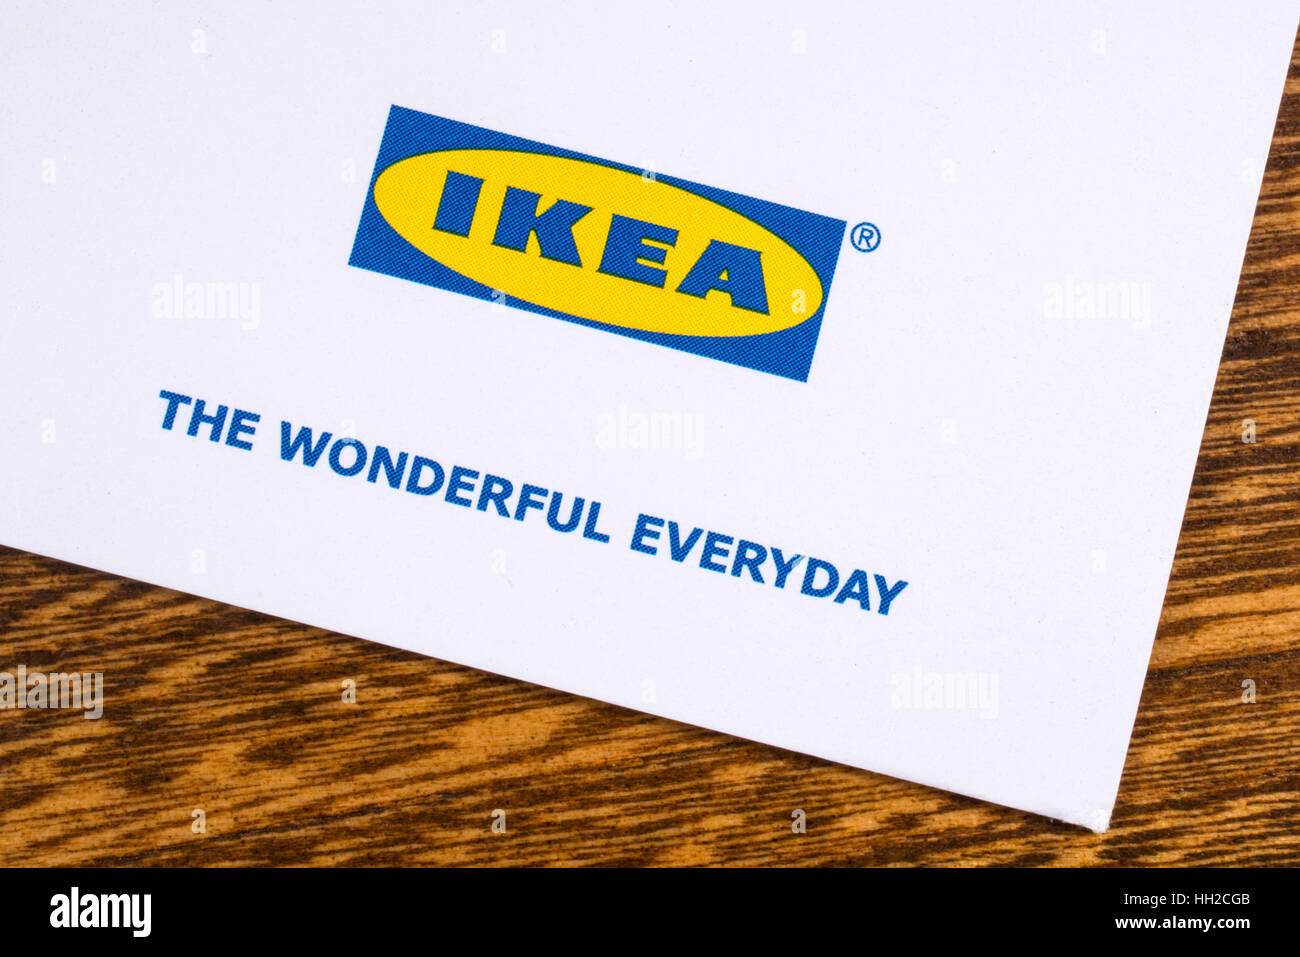 LONDON, UK - 13. Januar 2017: Eine Nahaufnahme der Ikea-Firmen-Logo mit der wunderbaren Alltags Firmenslogan. Stockfoto